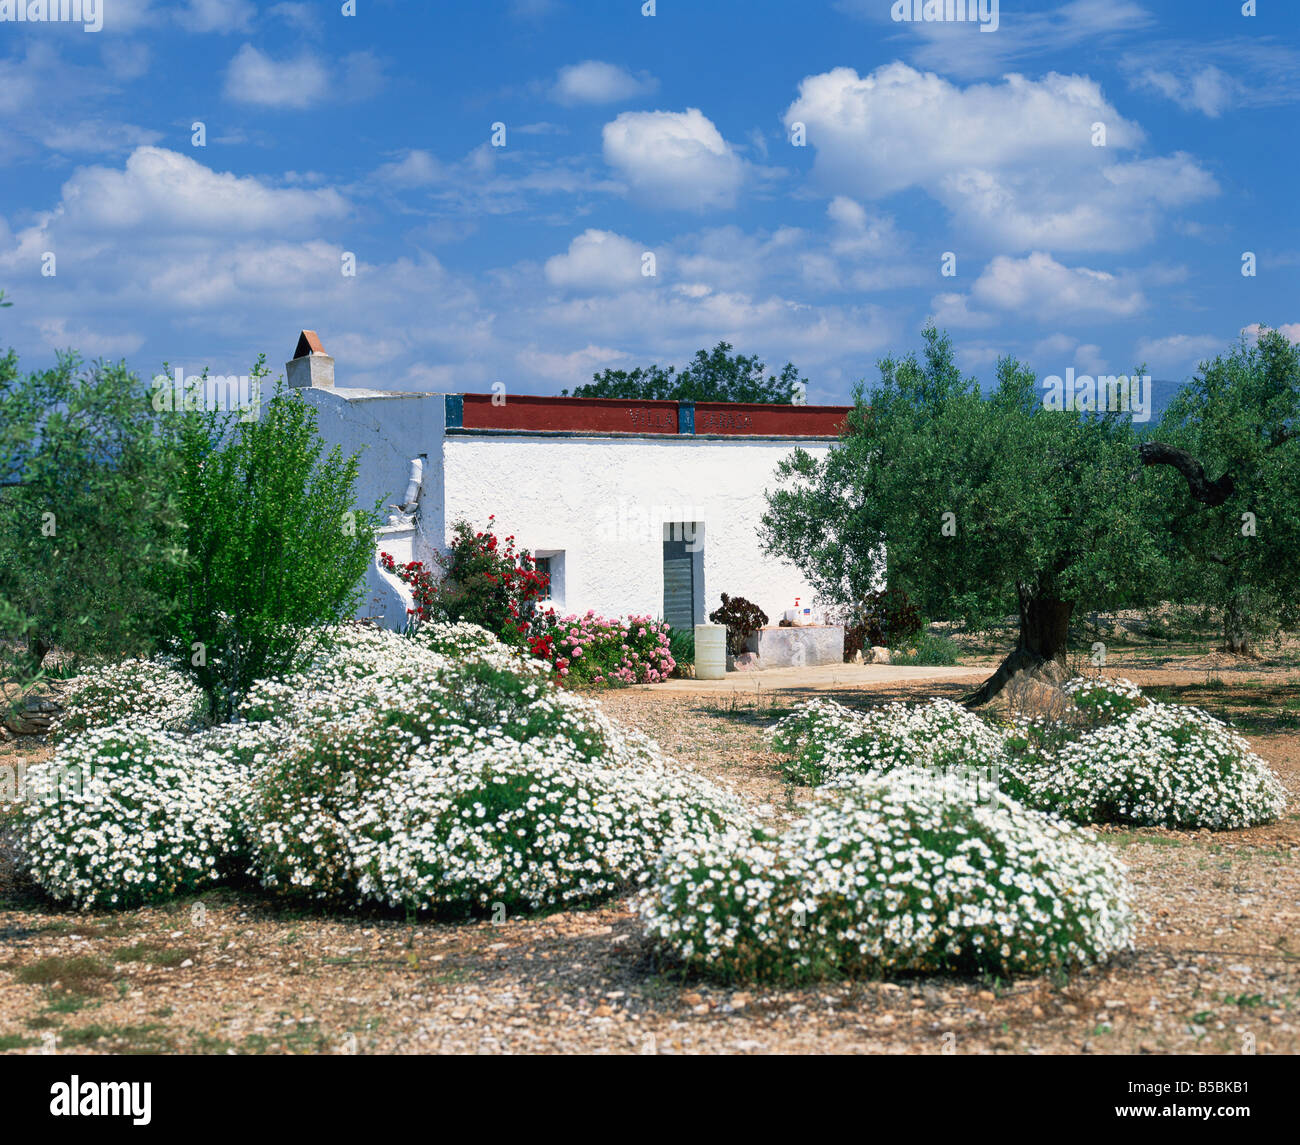 Sommerblumen vor einer weißen Mauern umgebene spanische Villa in Valencia Spanien M Mawson Stockfoto